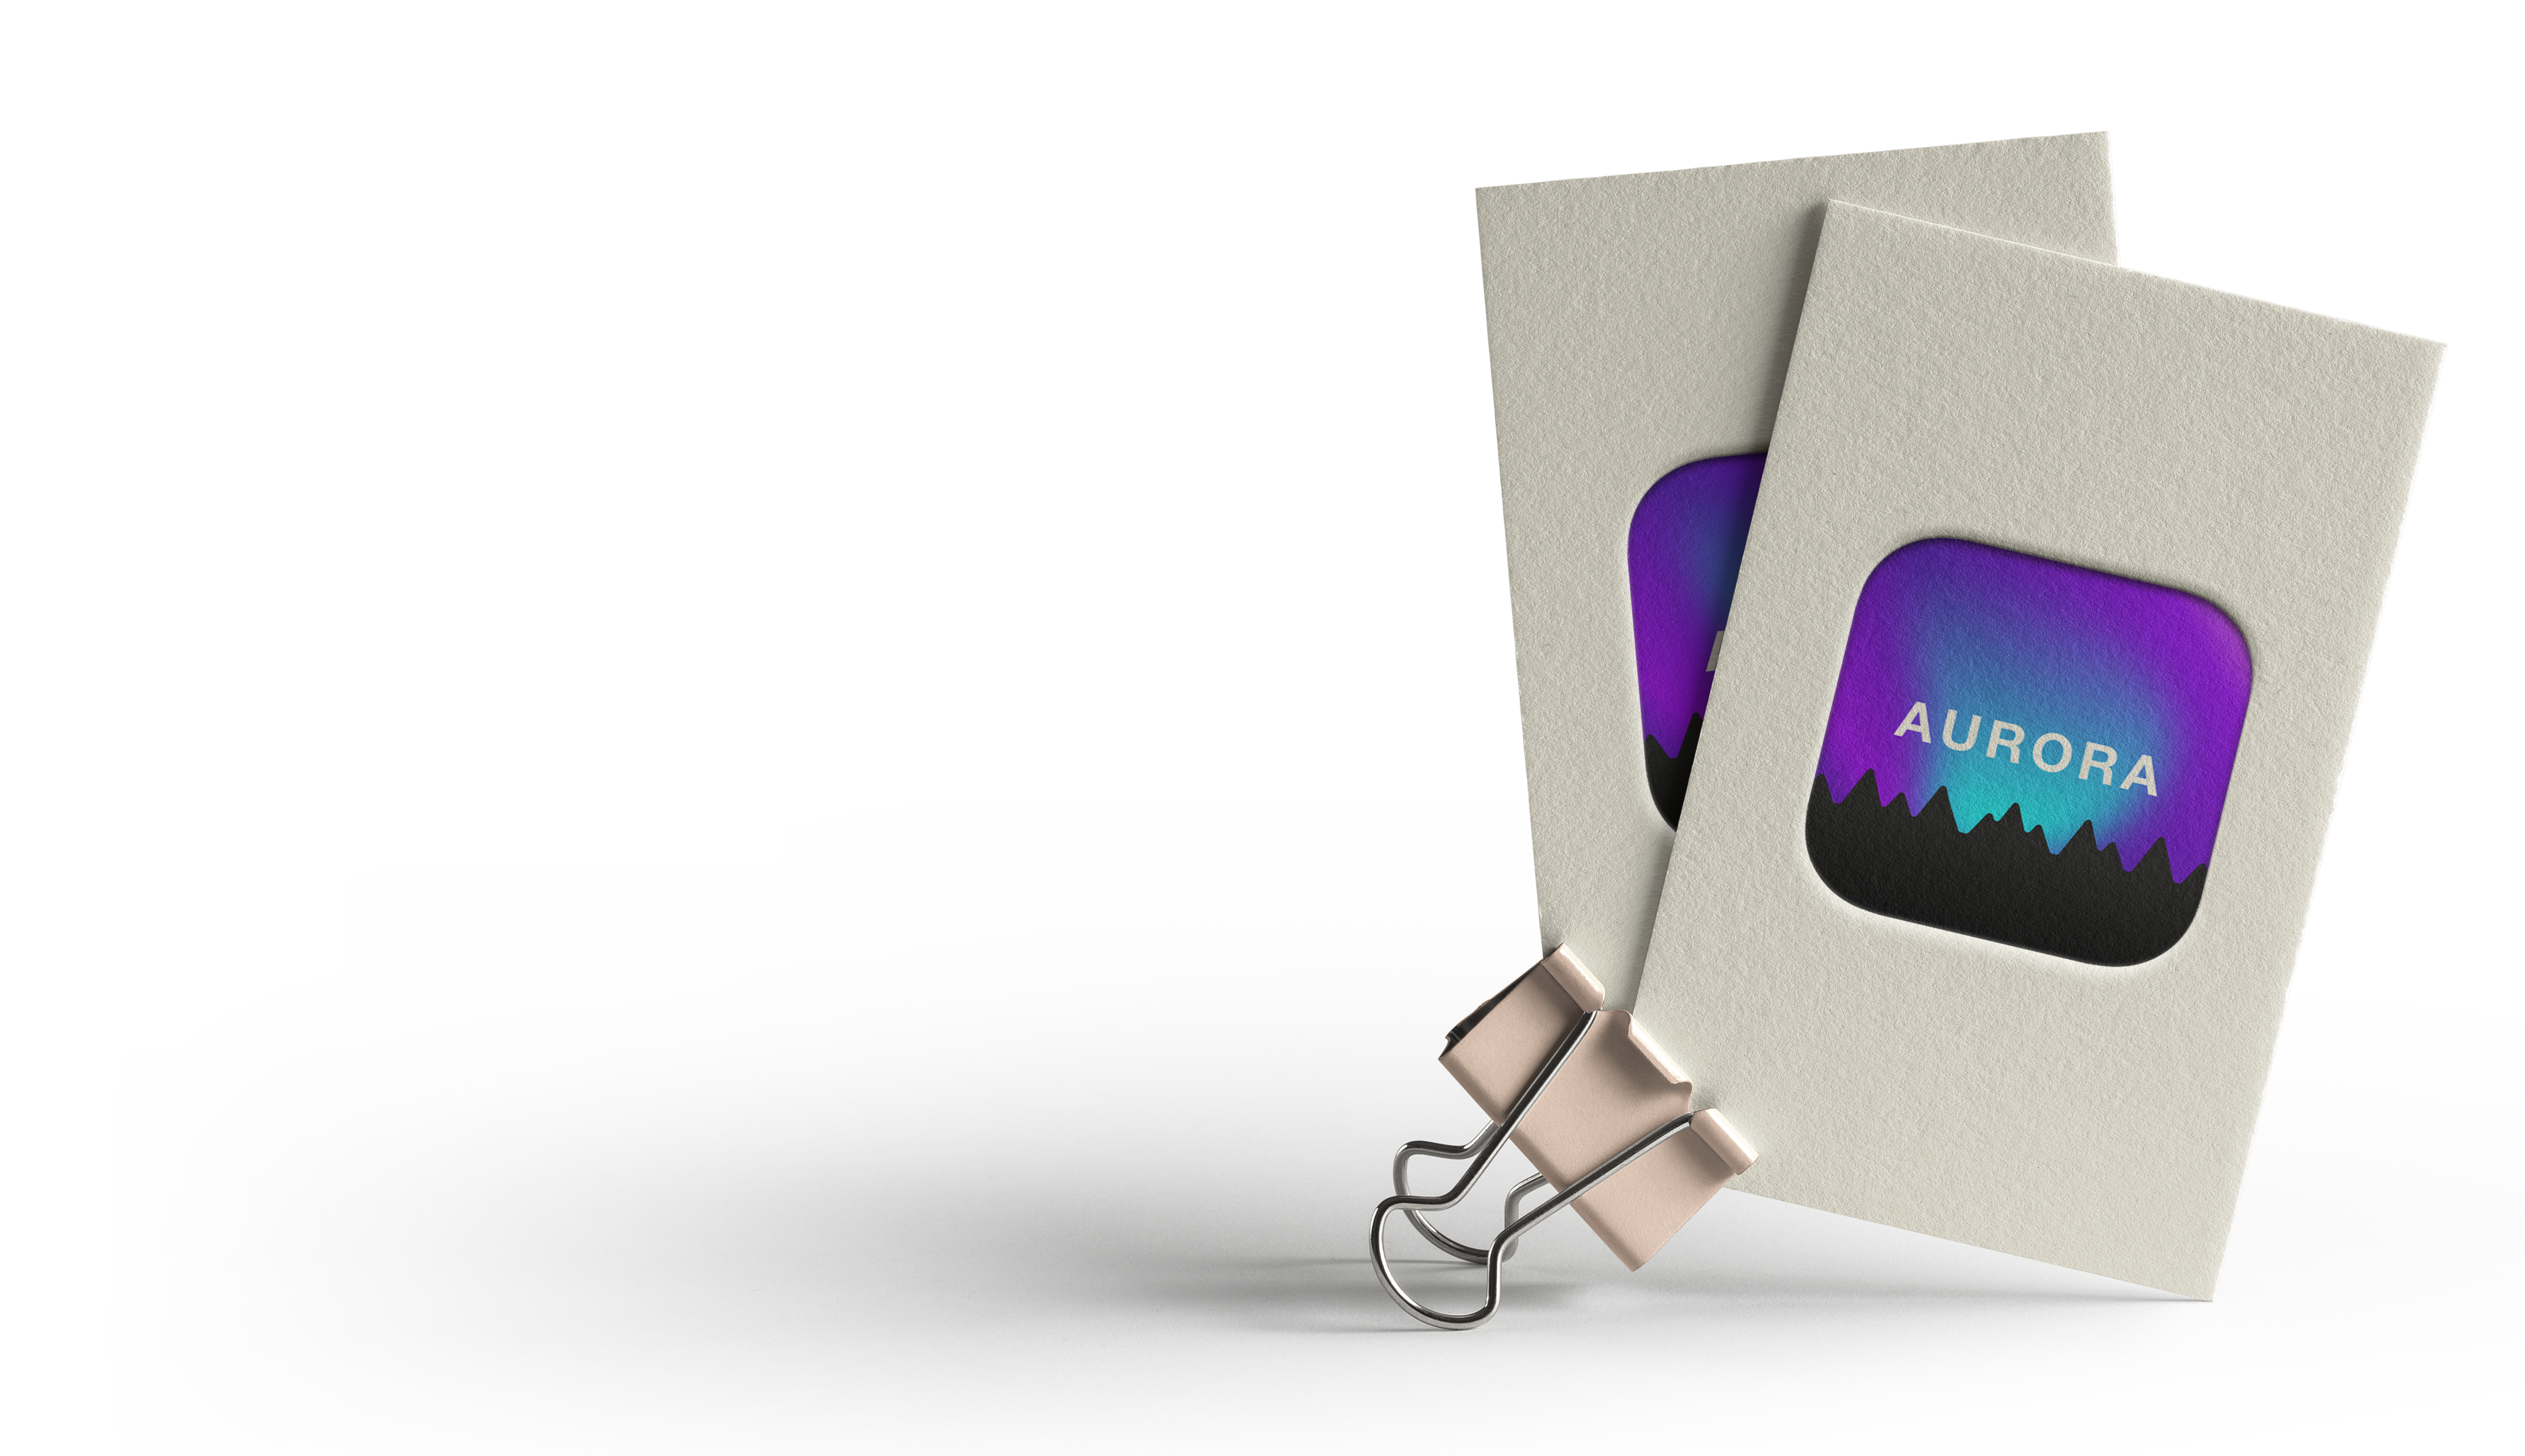 alt=“aurora app resource card”